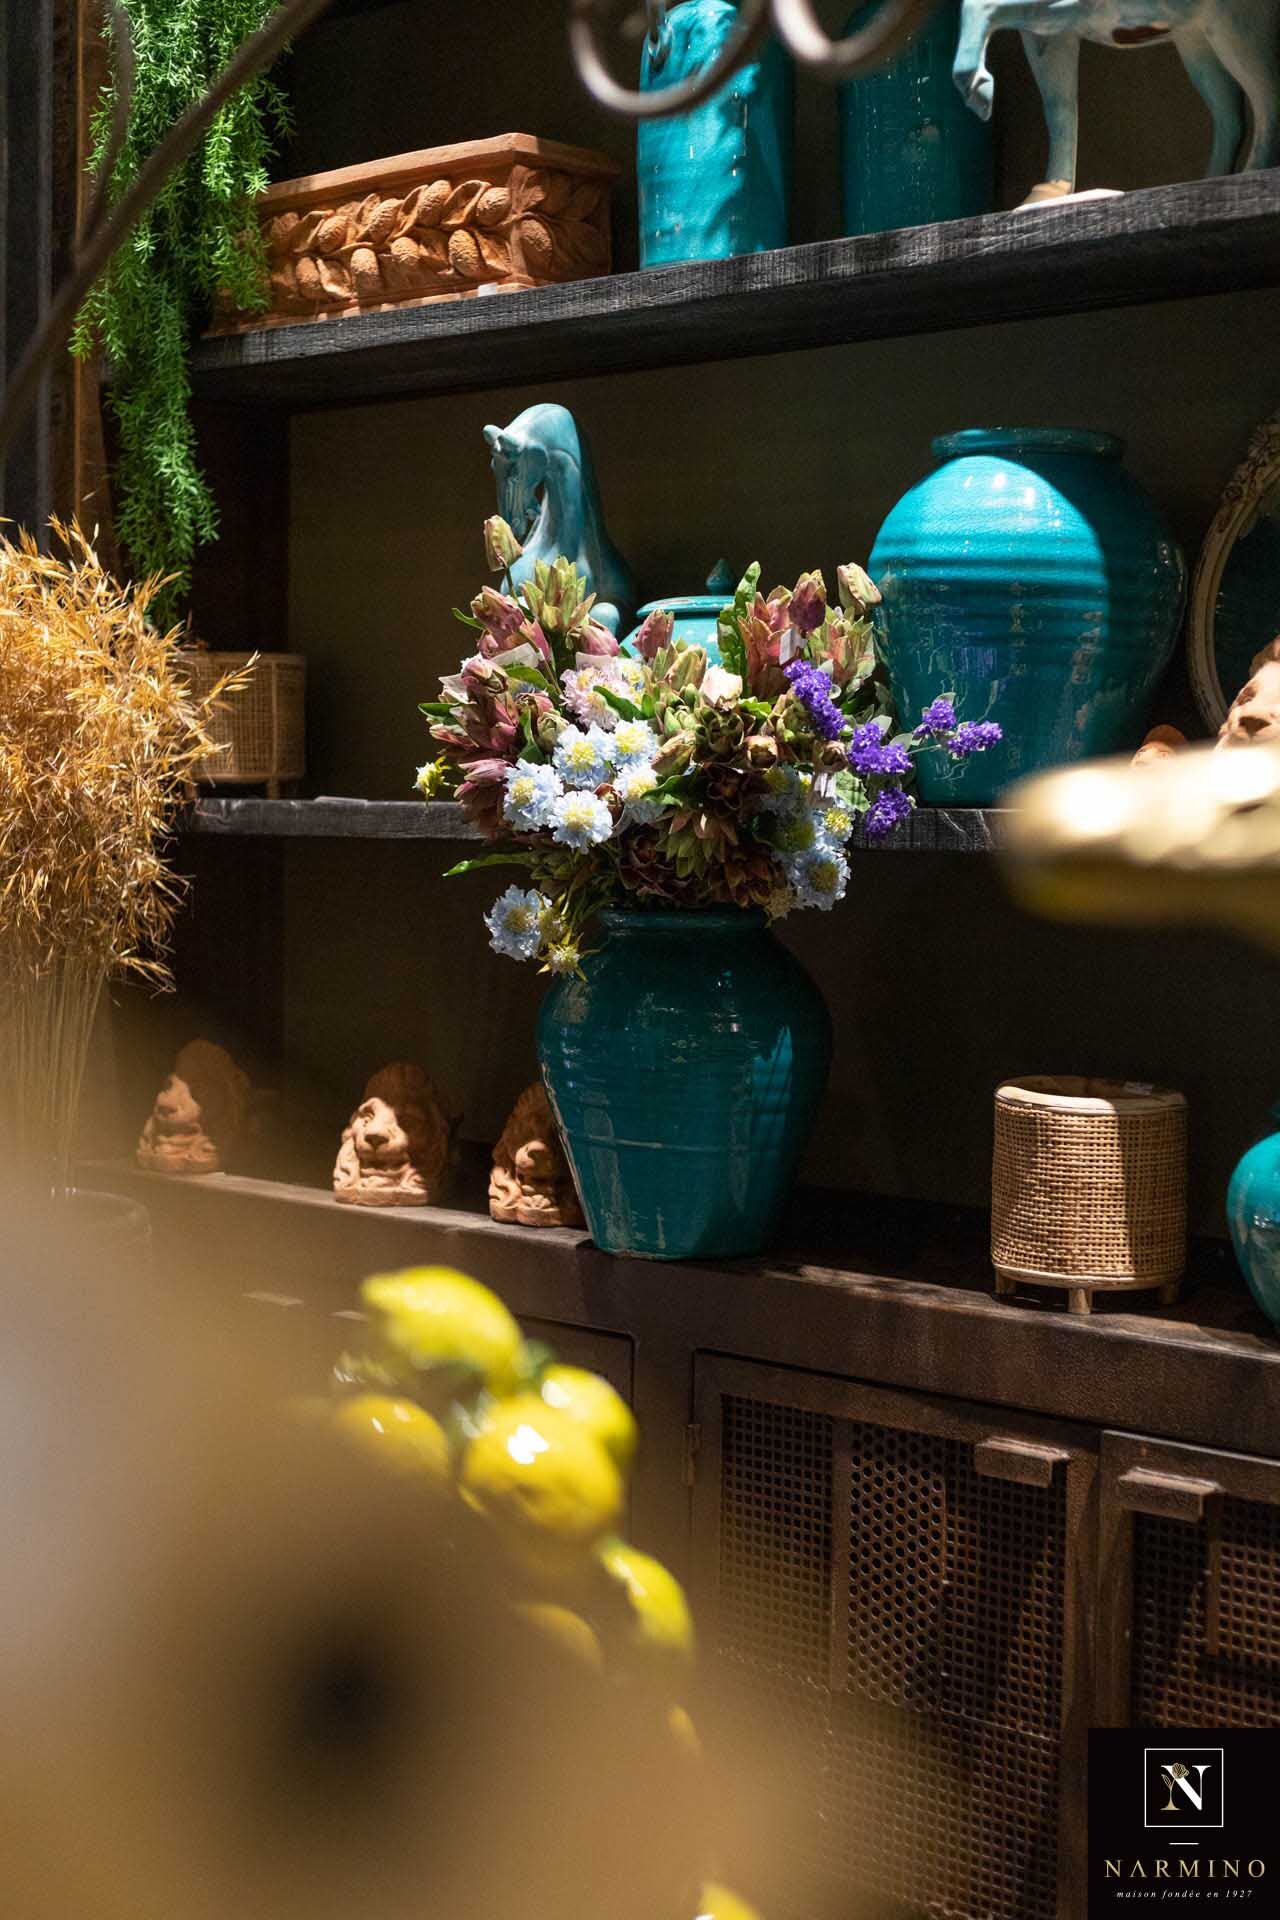 Notre collection de vases en céramique émaillée turquoise